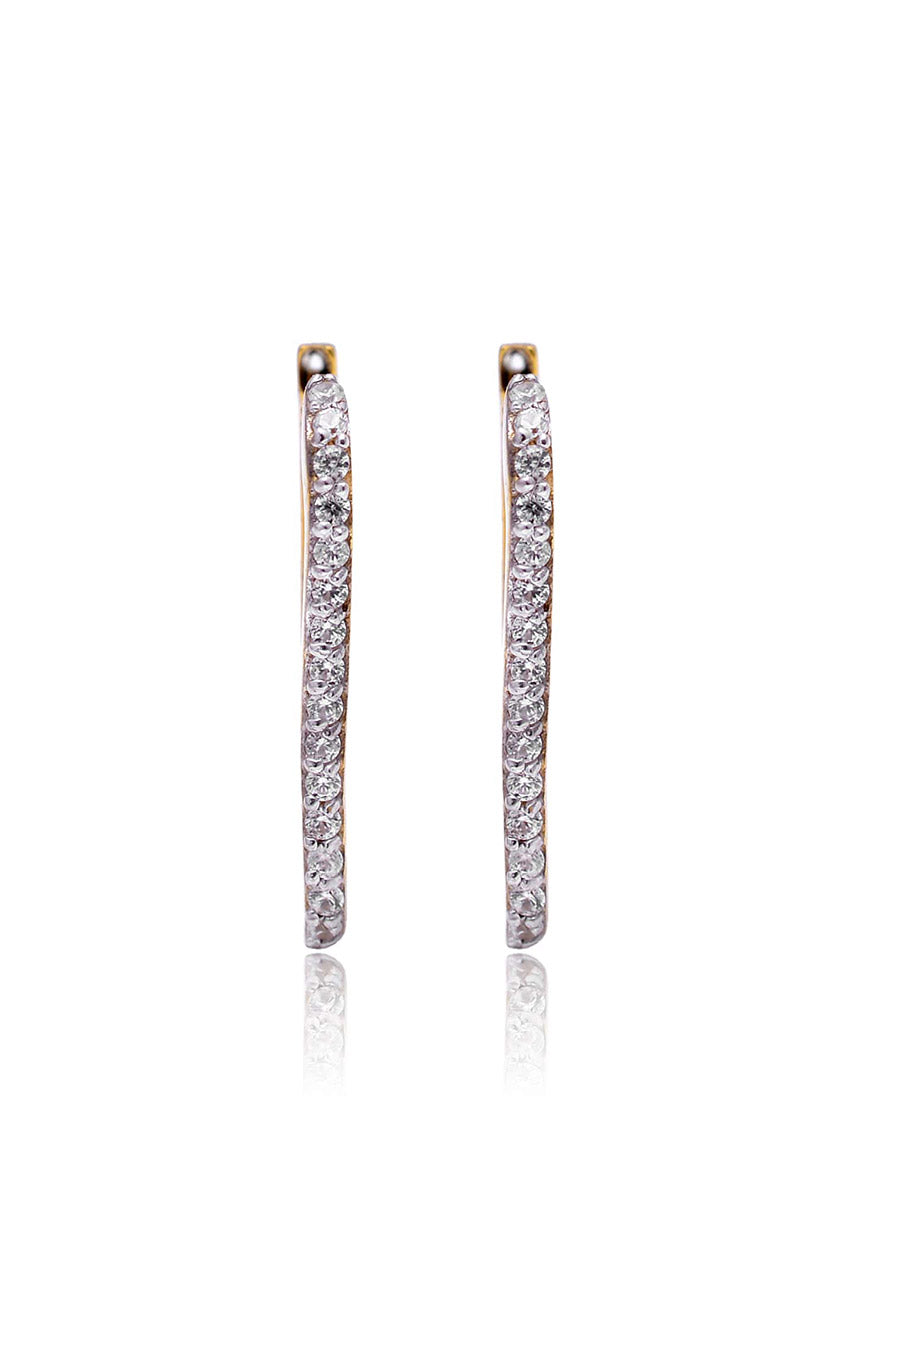 Studded Oblong Gold Earrings in 925 Silver